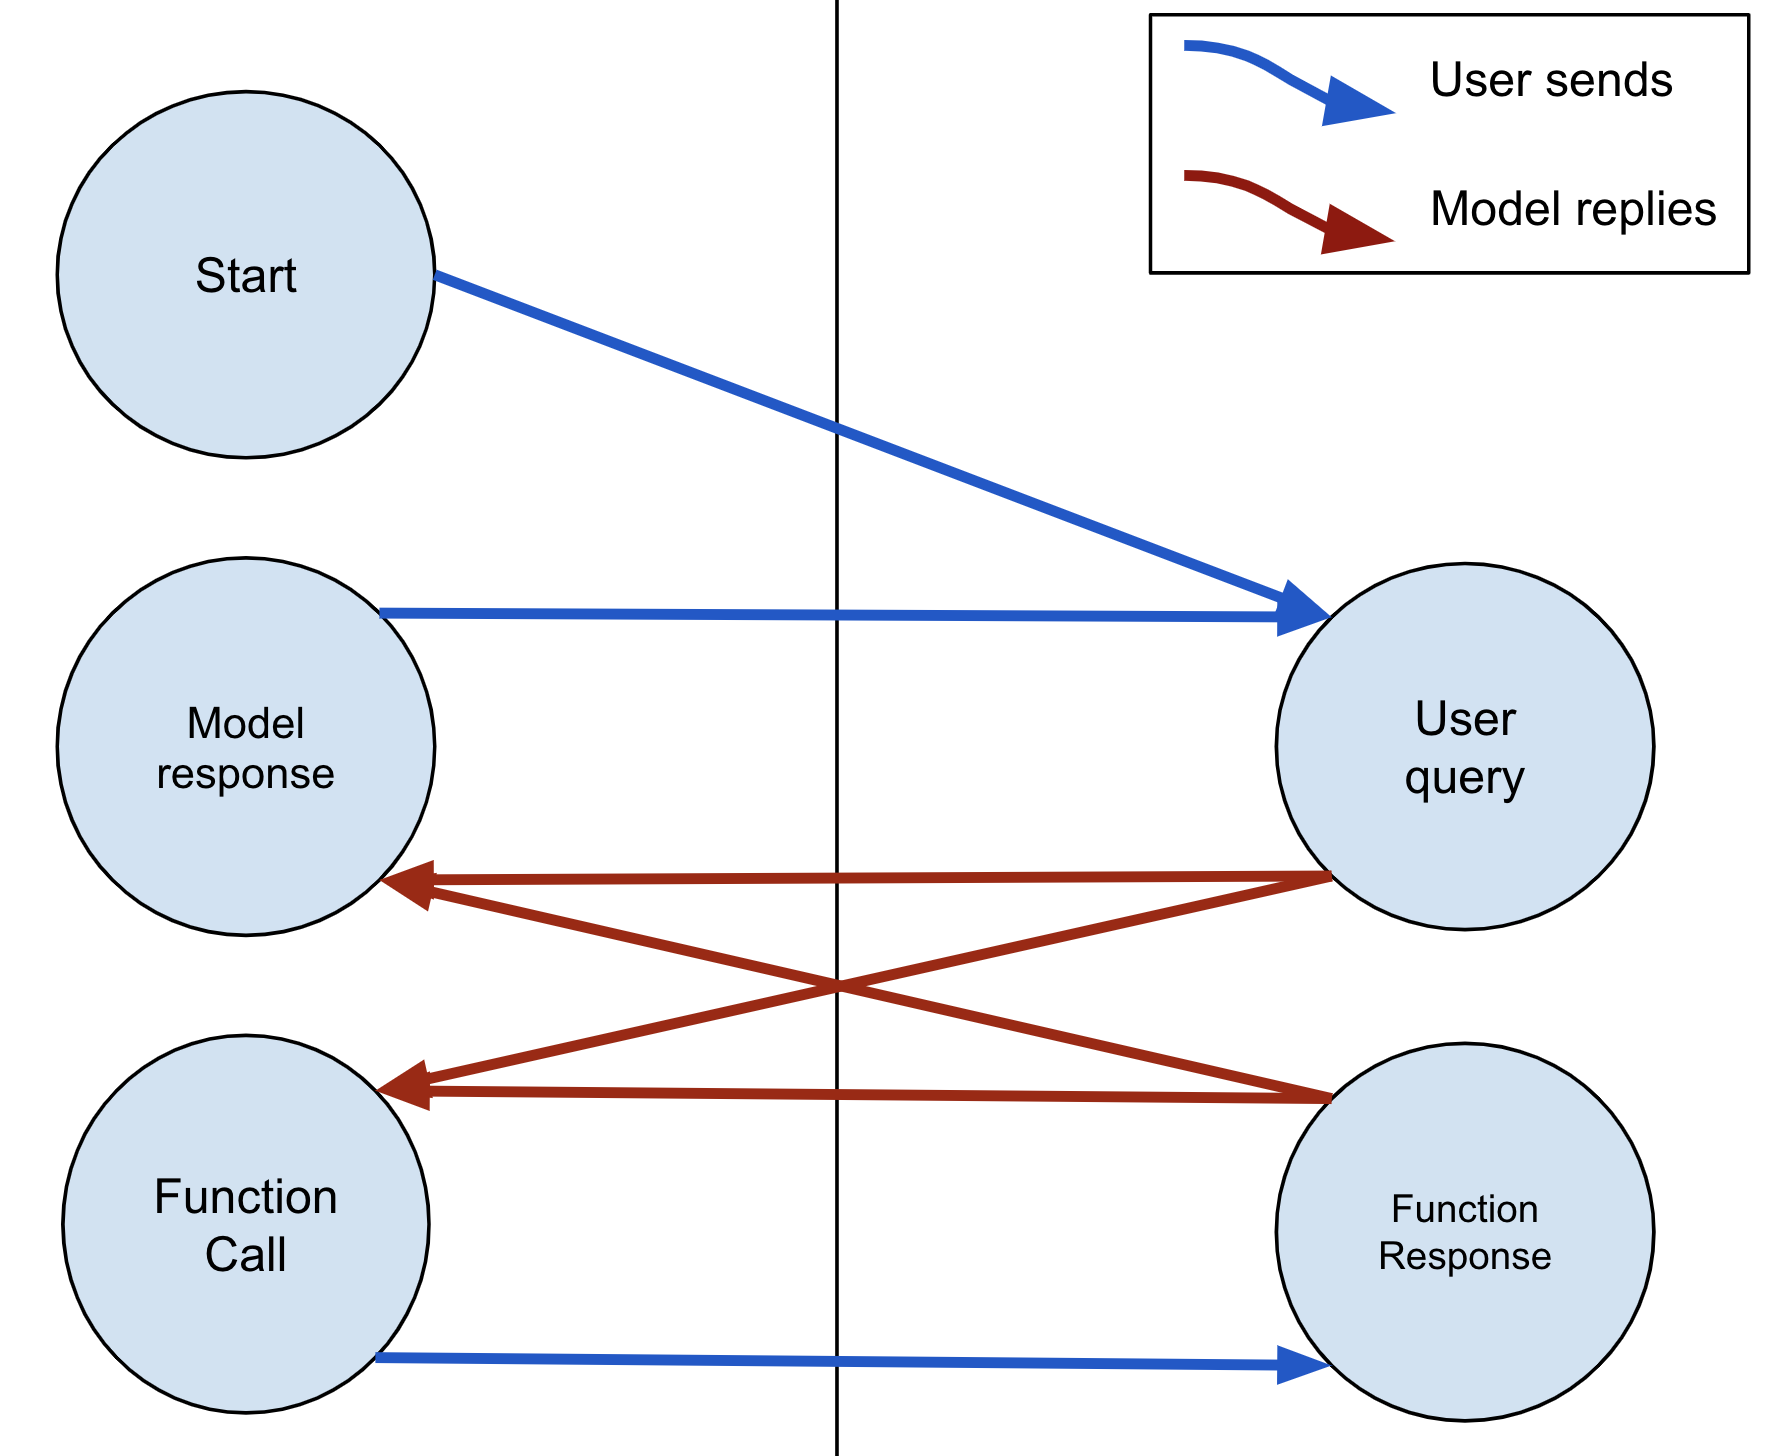 모델은 항상 텍스트 또는 FunctionCall로 응답할 수 있습니다. 모델이 FunctionCall을 전송하면 사용자는 FunctionResponse로 응답해야 합니다.